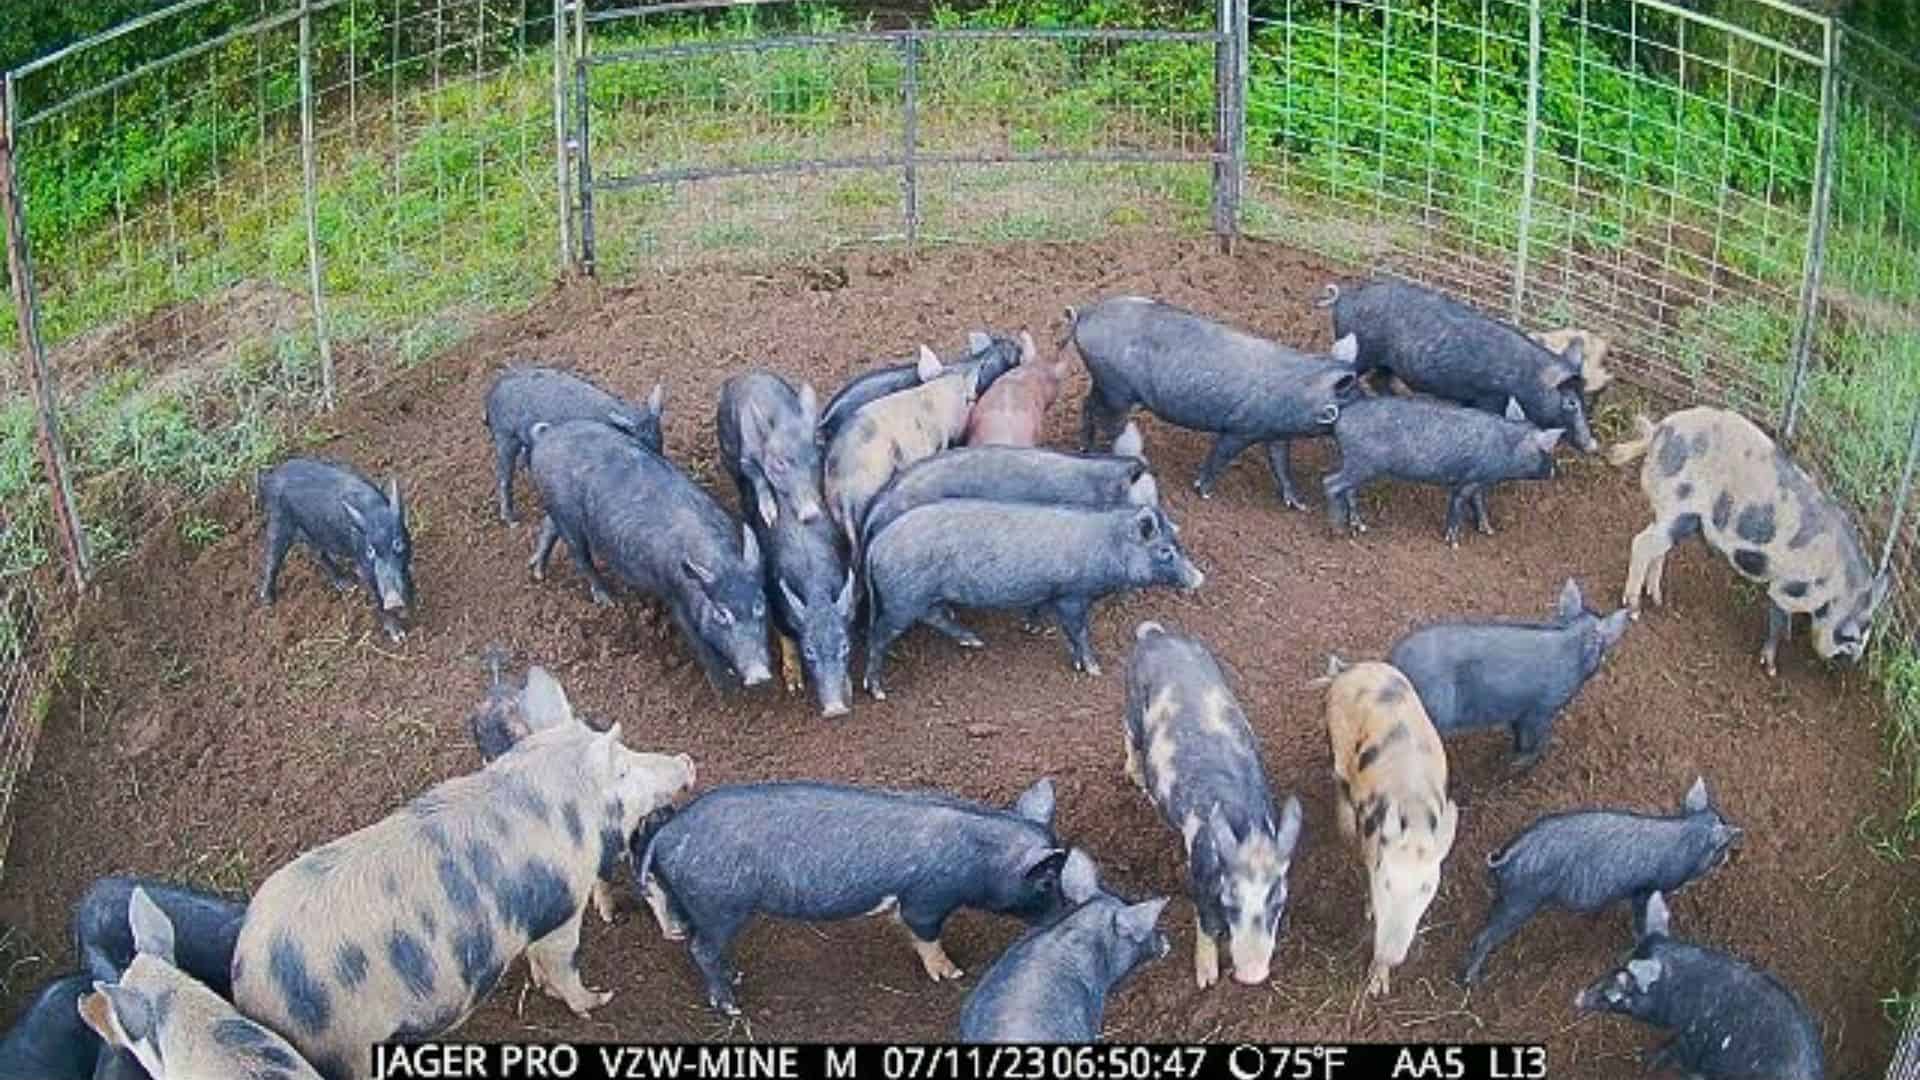 Couple Capture 160 Hogs